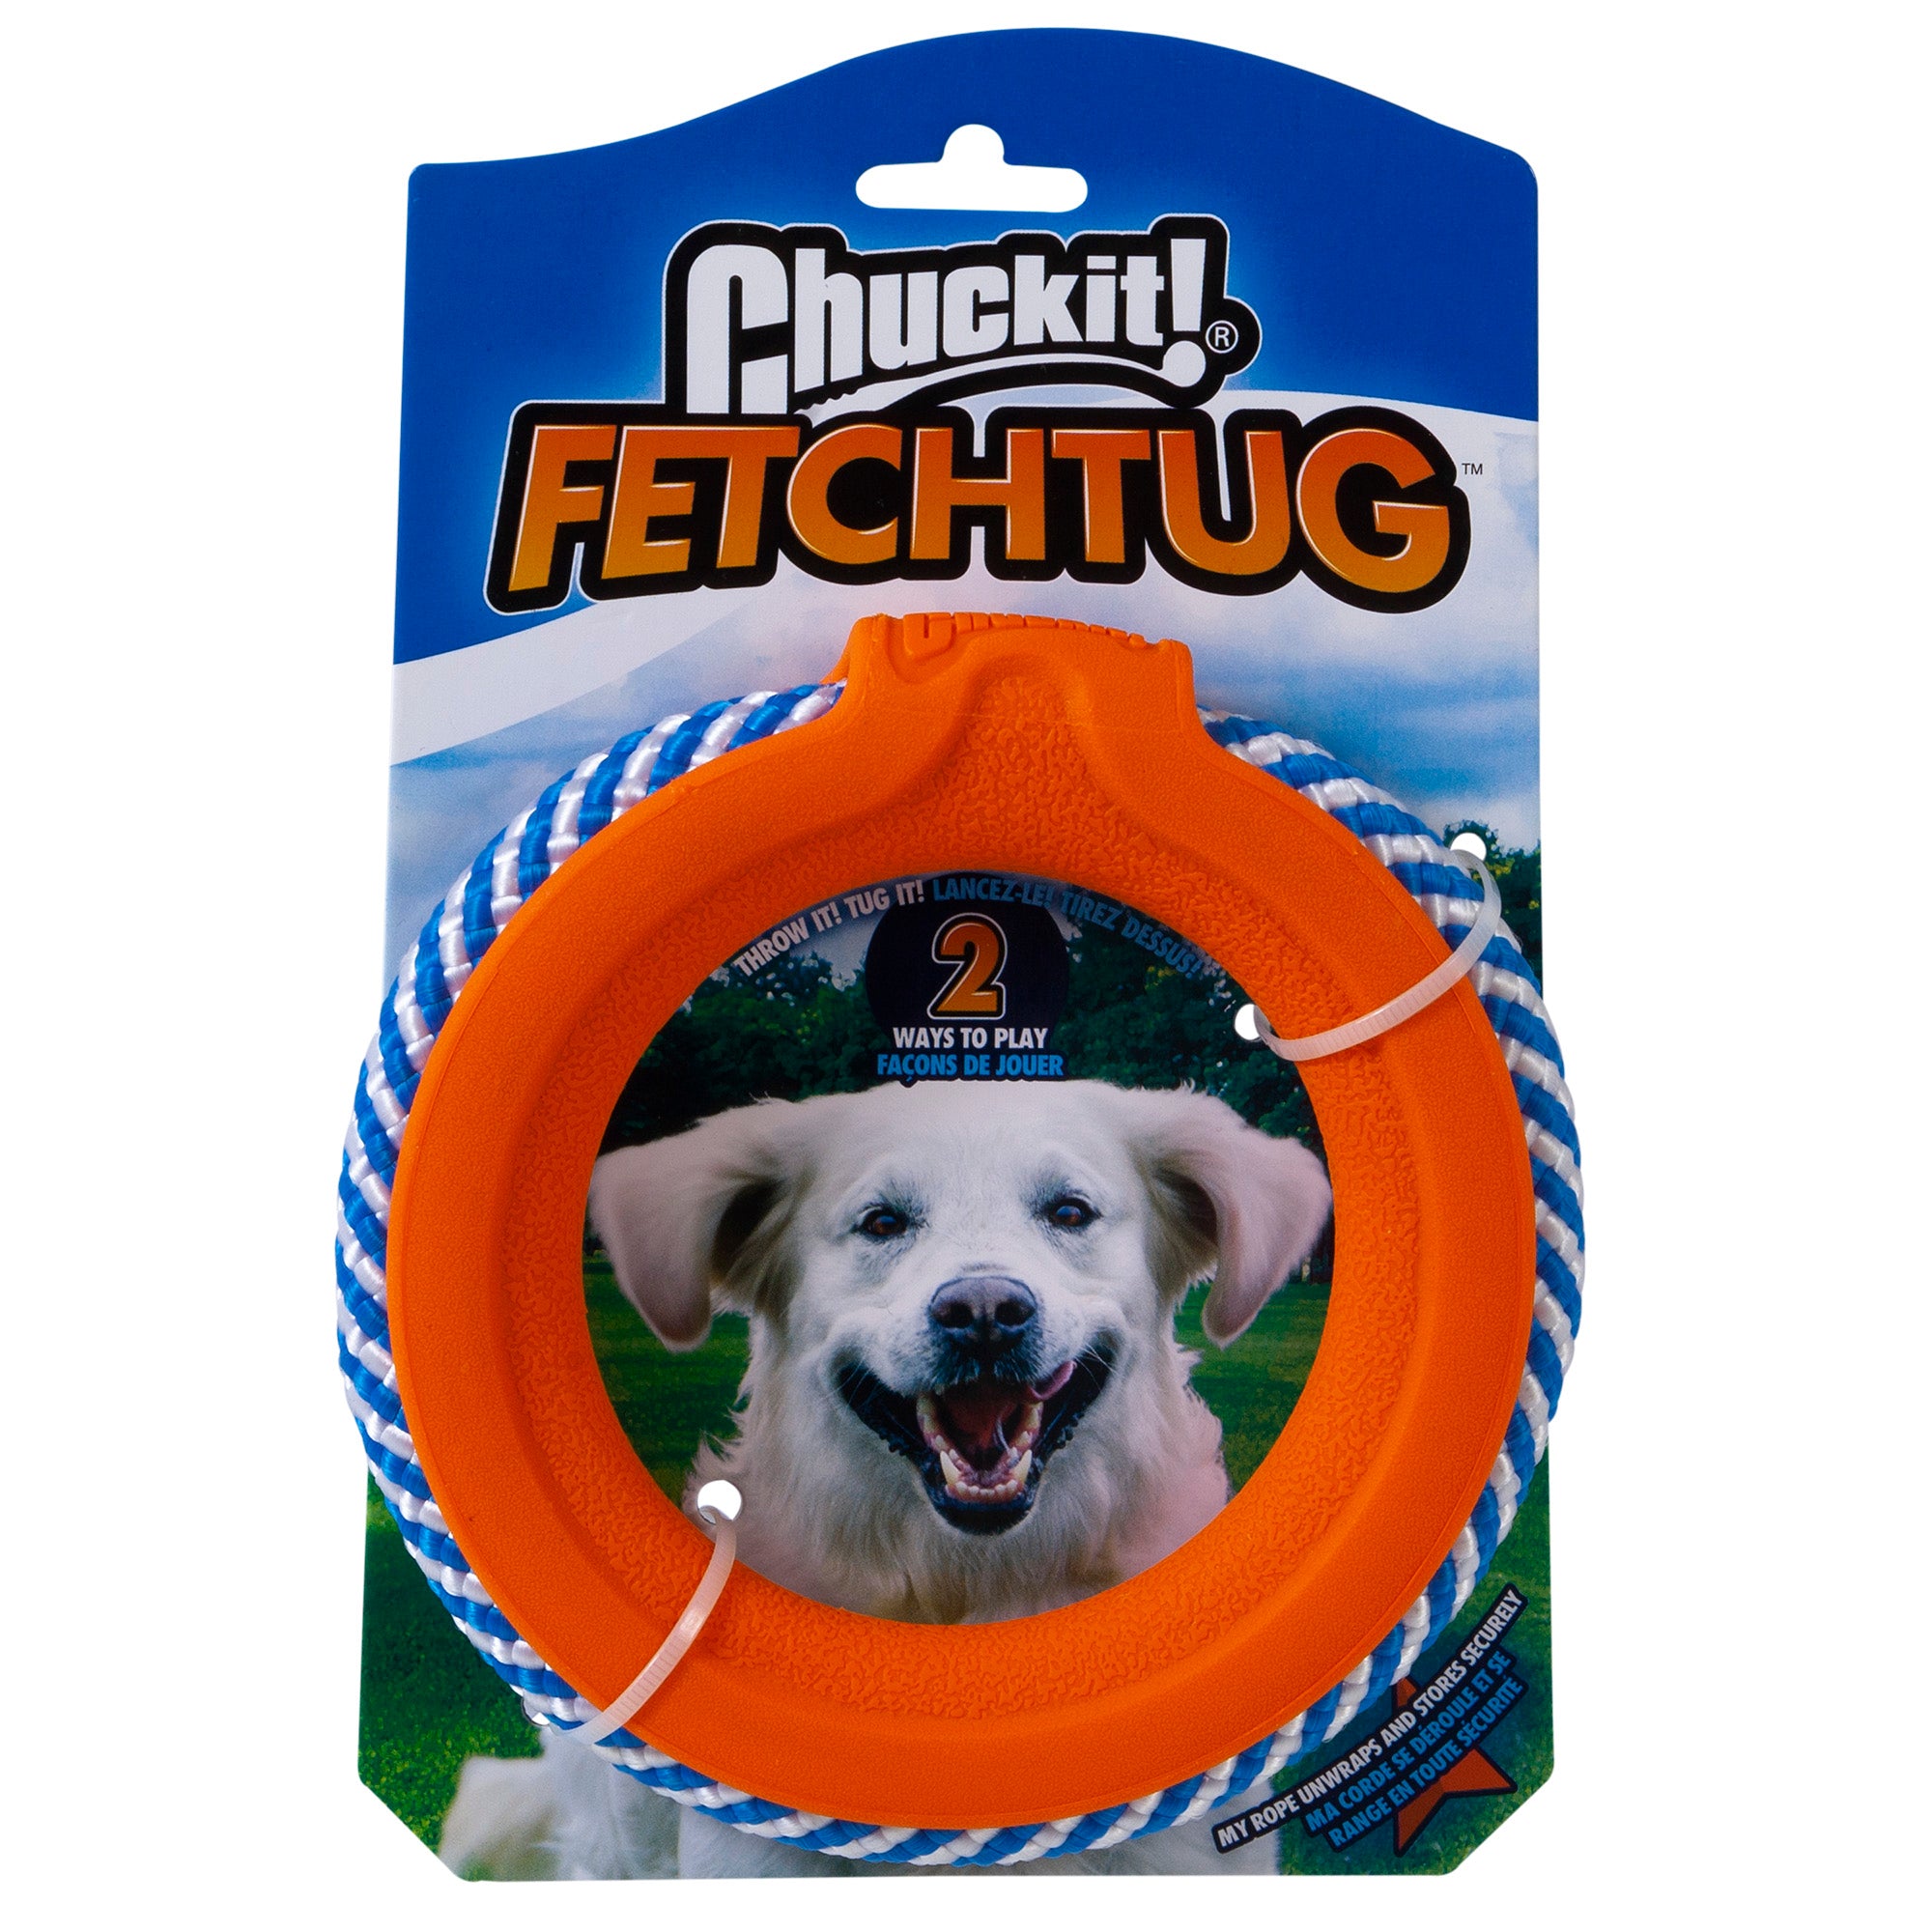 Fetch Tug